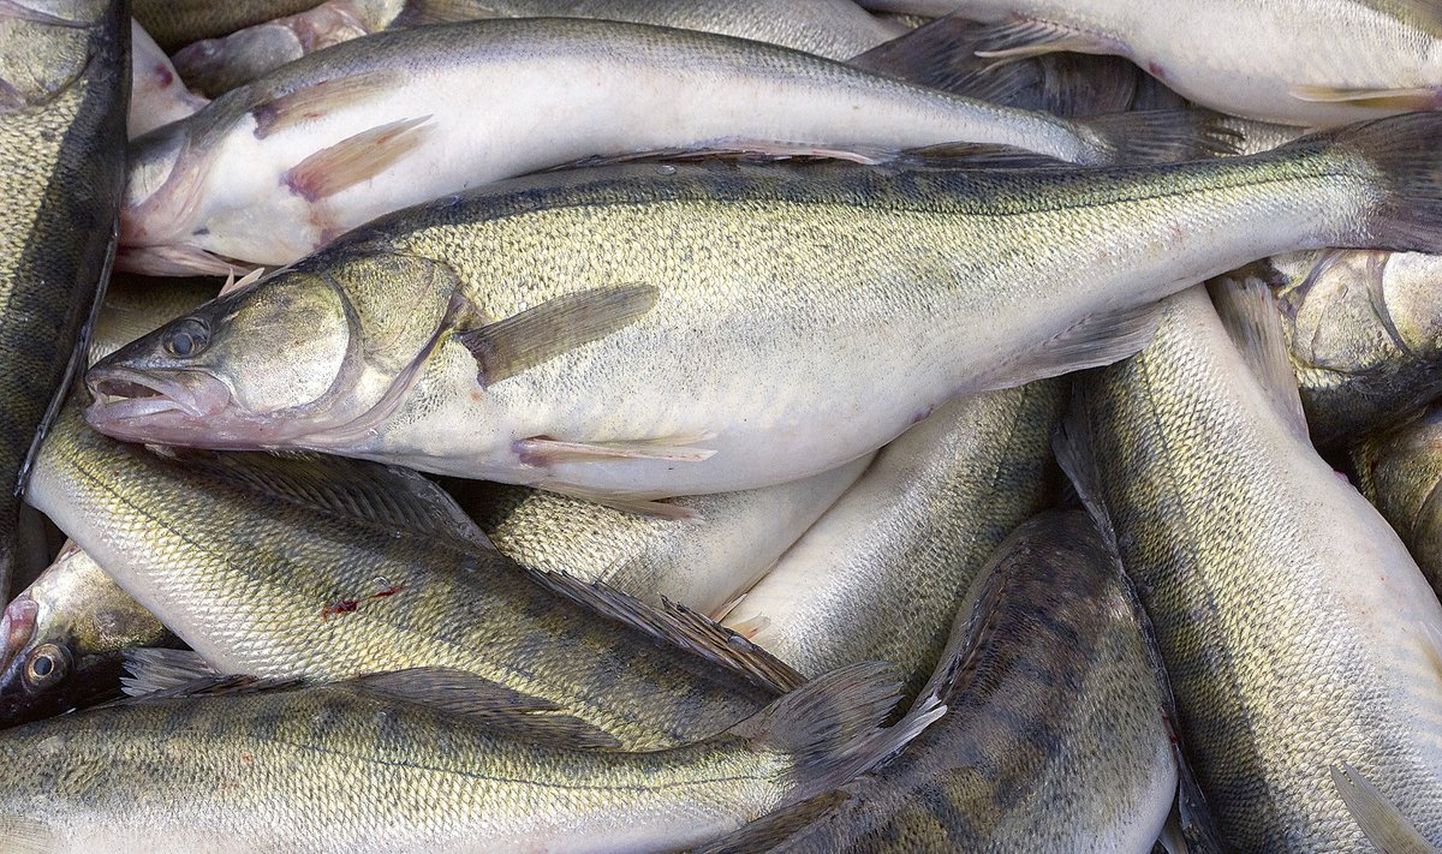 Судак - одна из самых дорогих по цене рыб в Эстонии.